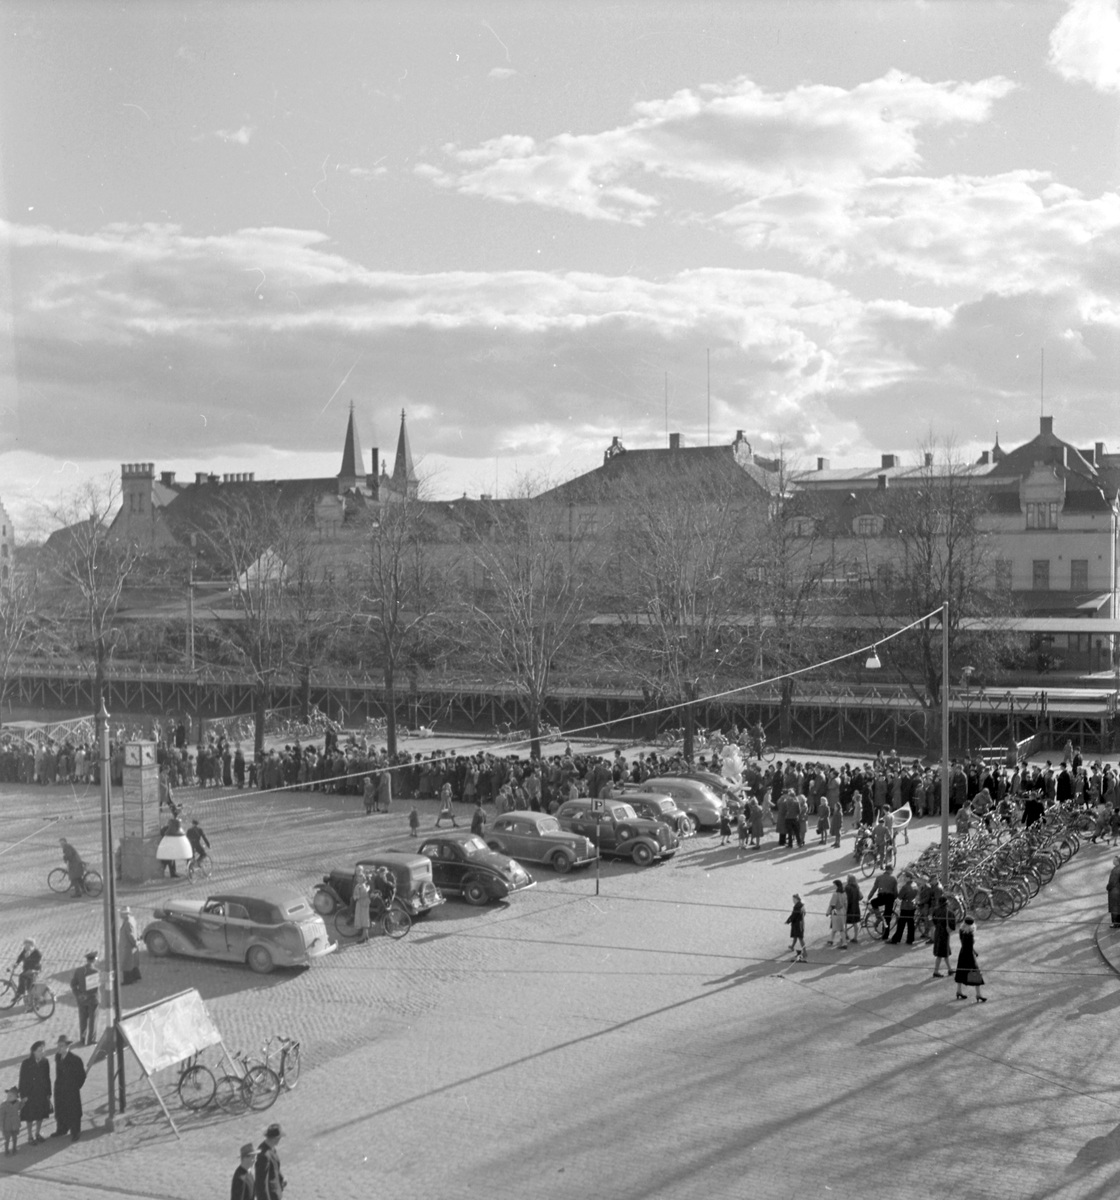 Gävle
Cirkusen har kommit till stan!
Ungdomscirkusen från Furuvik "Tusen & en natt". 22 april
På Fisktorget/Hamntorget står cirkusvagnarna  vid cirkustältet. Besökarna strömmar till













